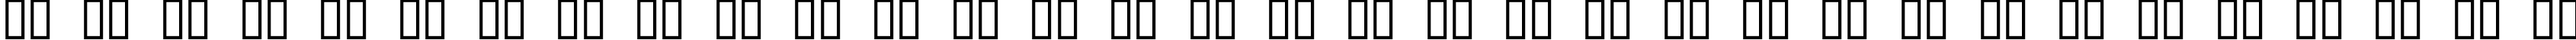 Пример написания русского алфавита шрифтом GeoC